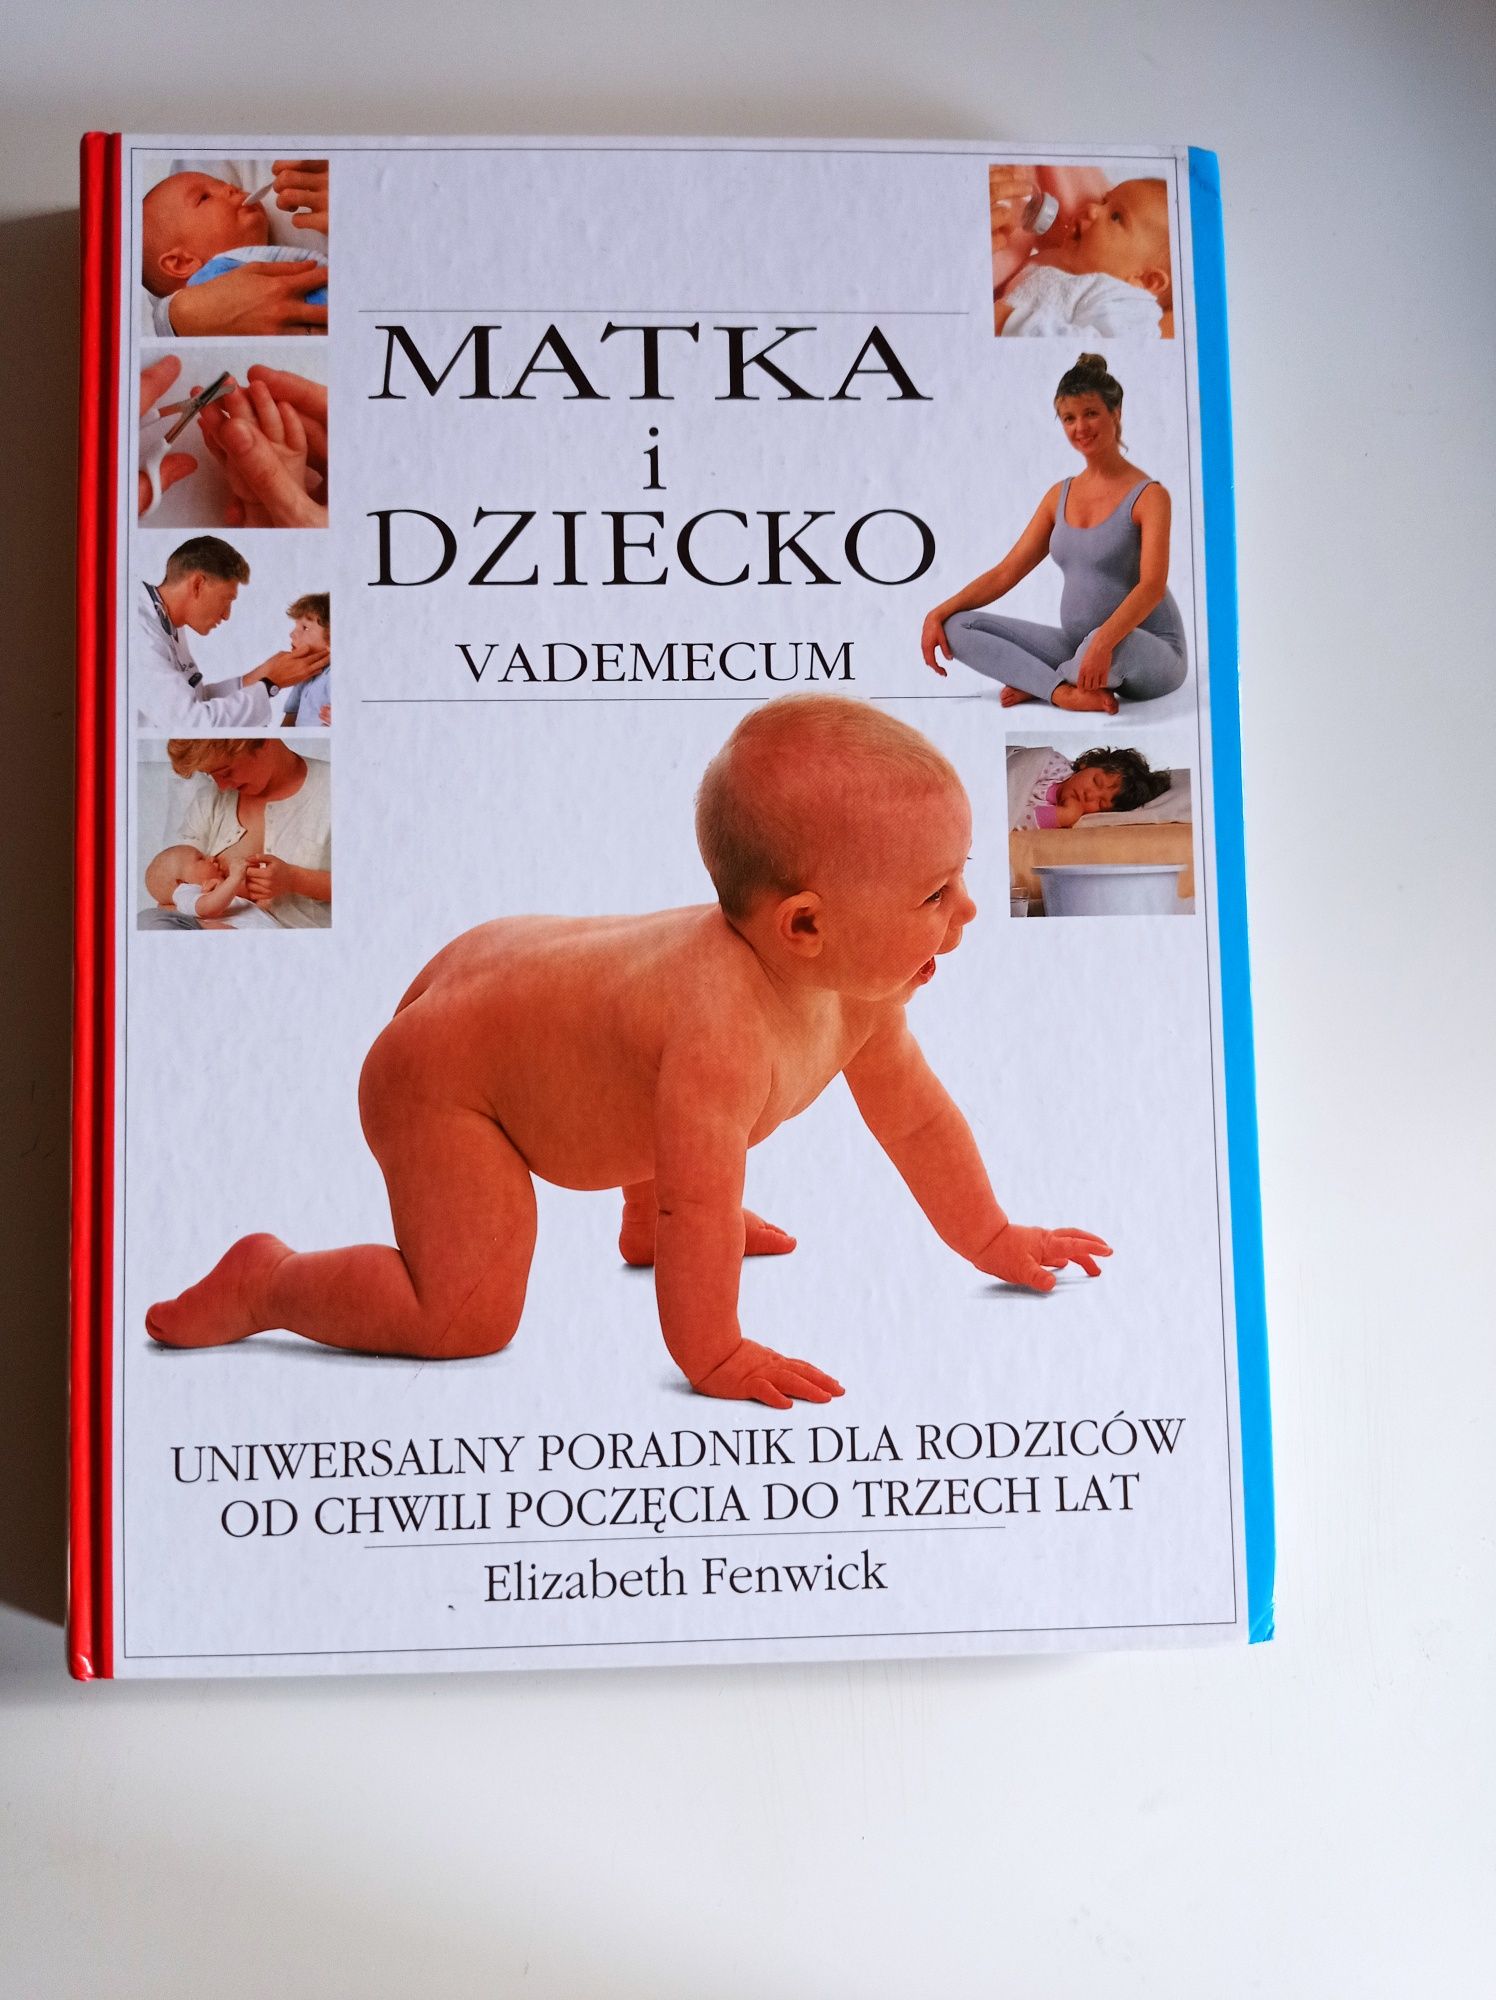 Książka "Matka i dziecko"